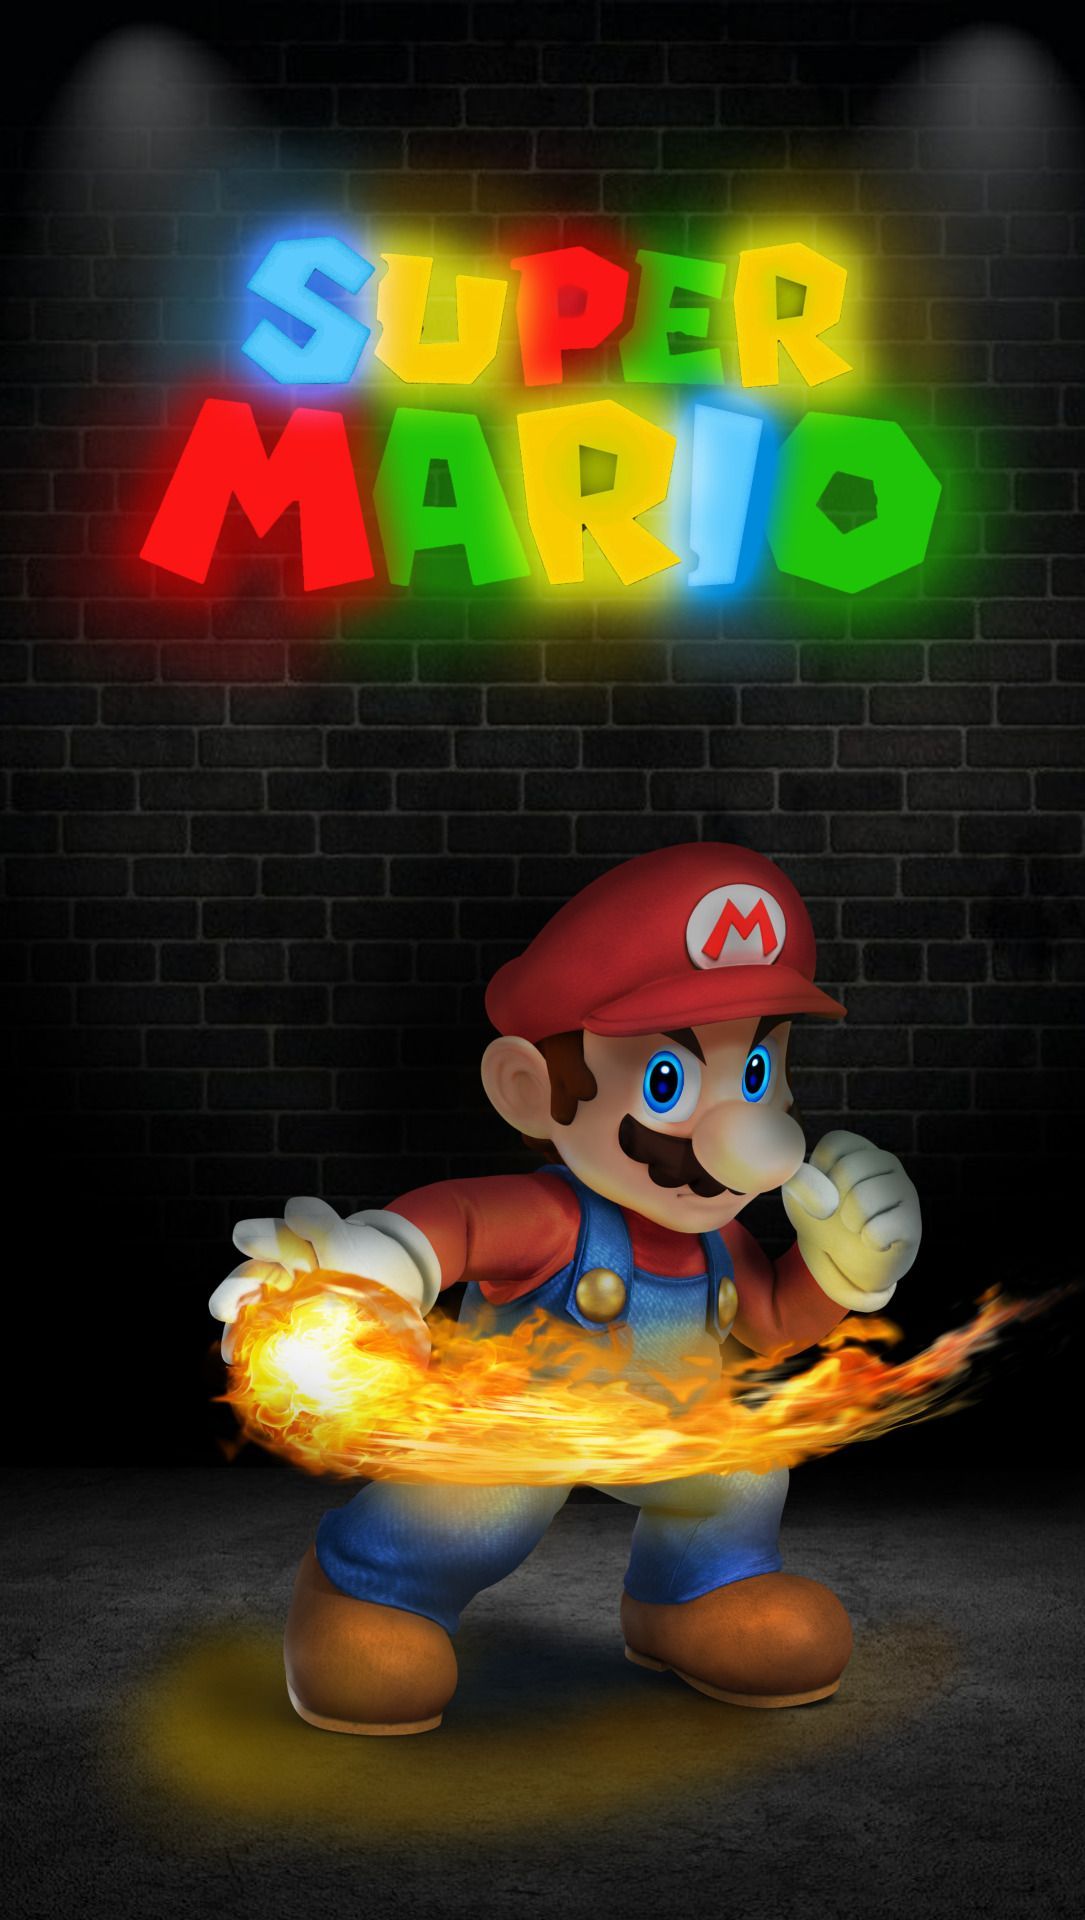 Super Mario ideas. super mario, mario, mario bros